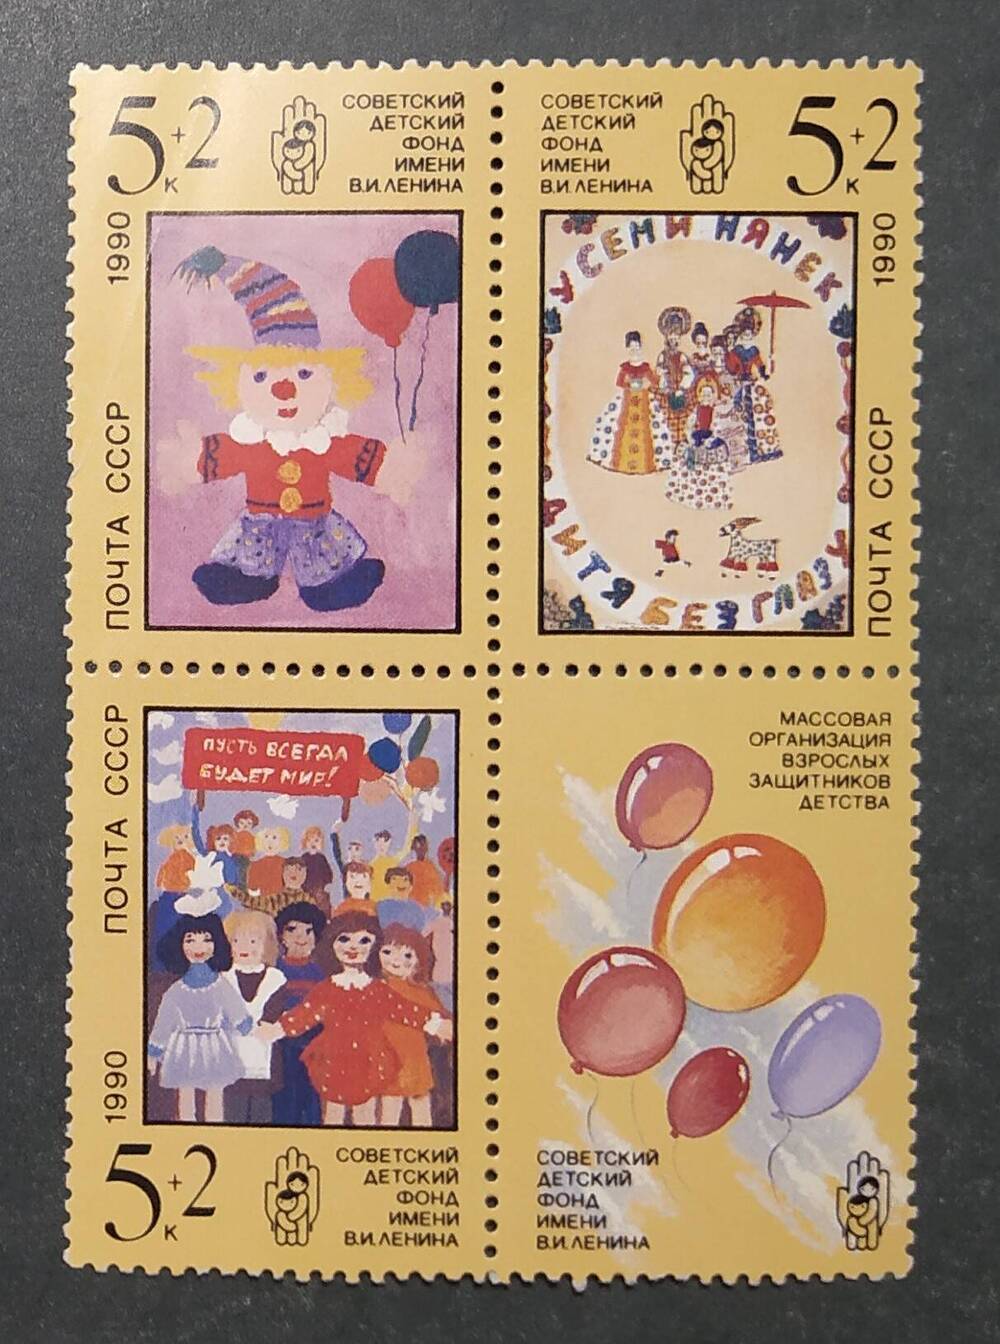 Сцепка почтовых марок с рисунками советских детей  Советский детский фонд имени В.И.Ленина.